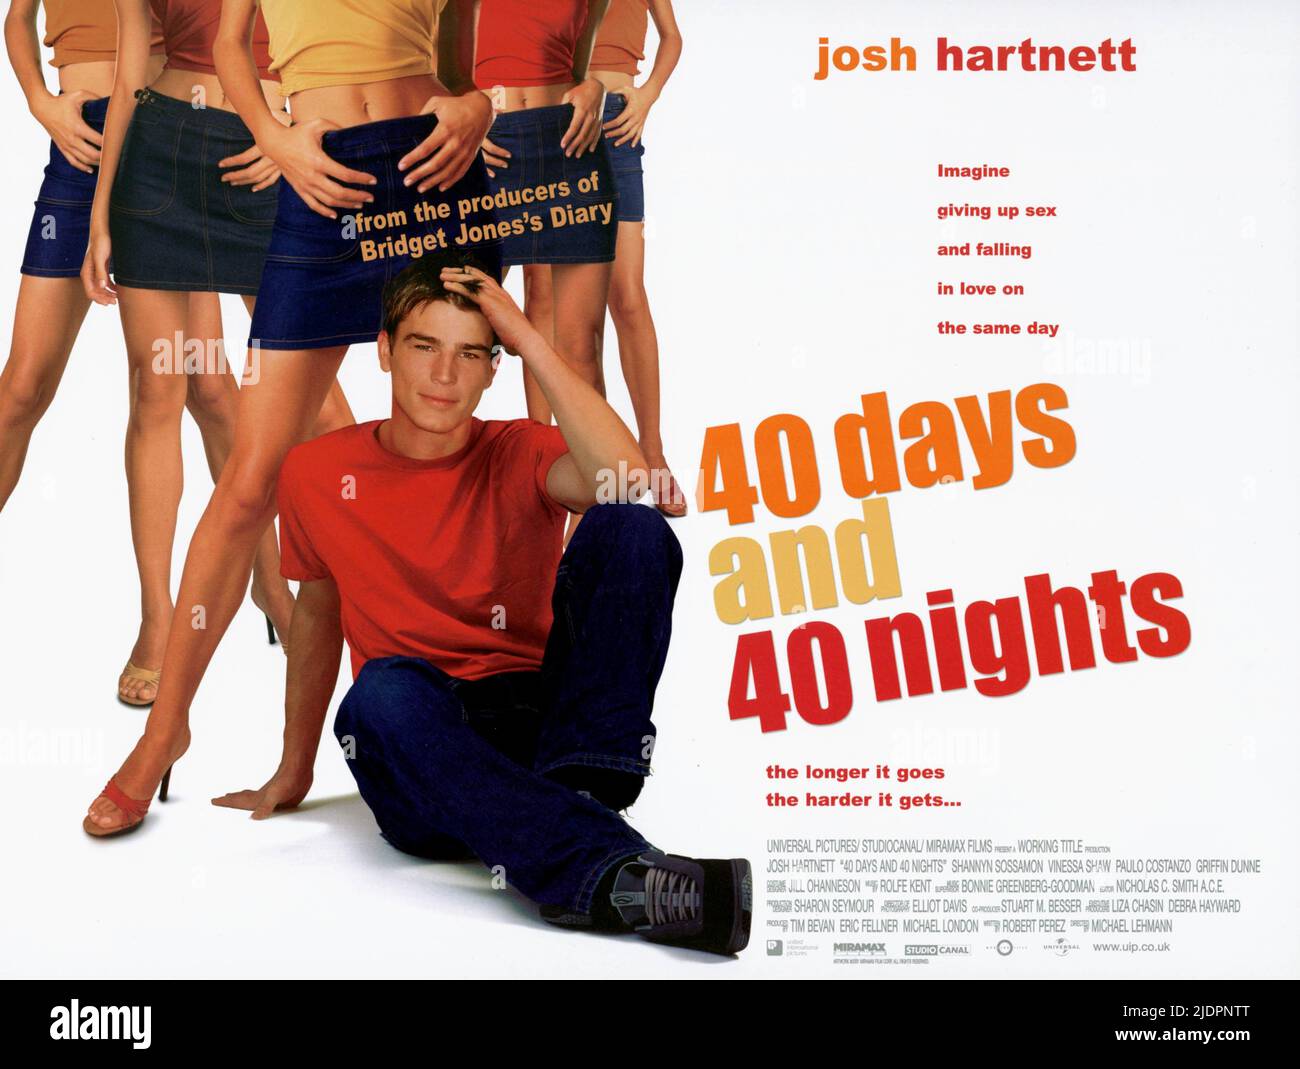 JOSH HARTNETT, 40 DAYS AND 40 NIGHTS, 2002, Stock Photo